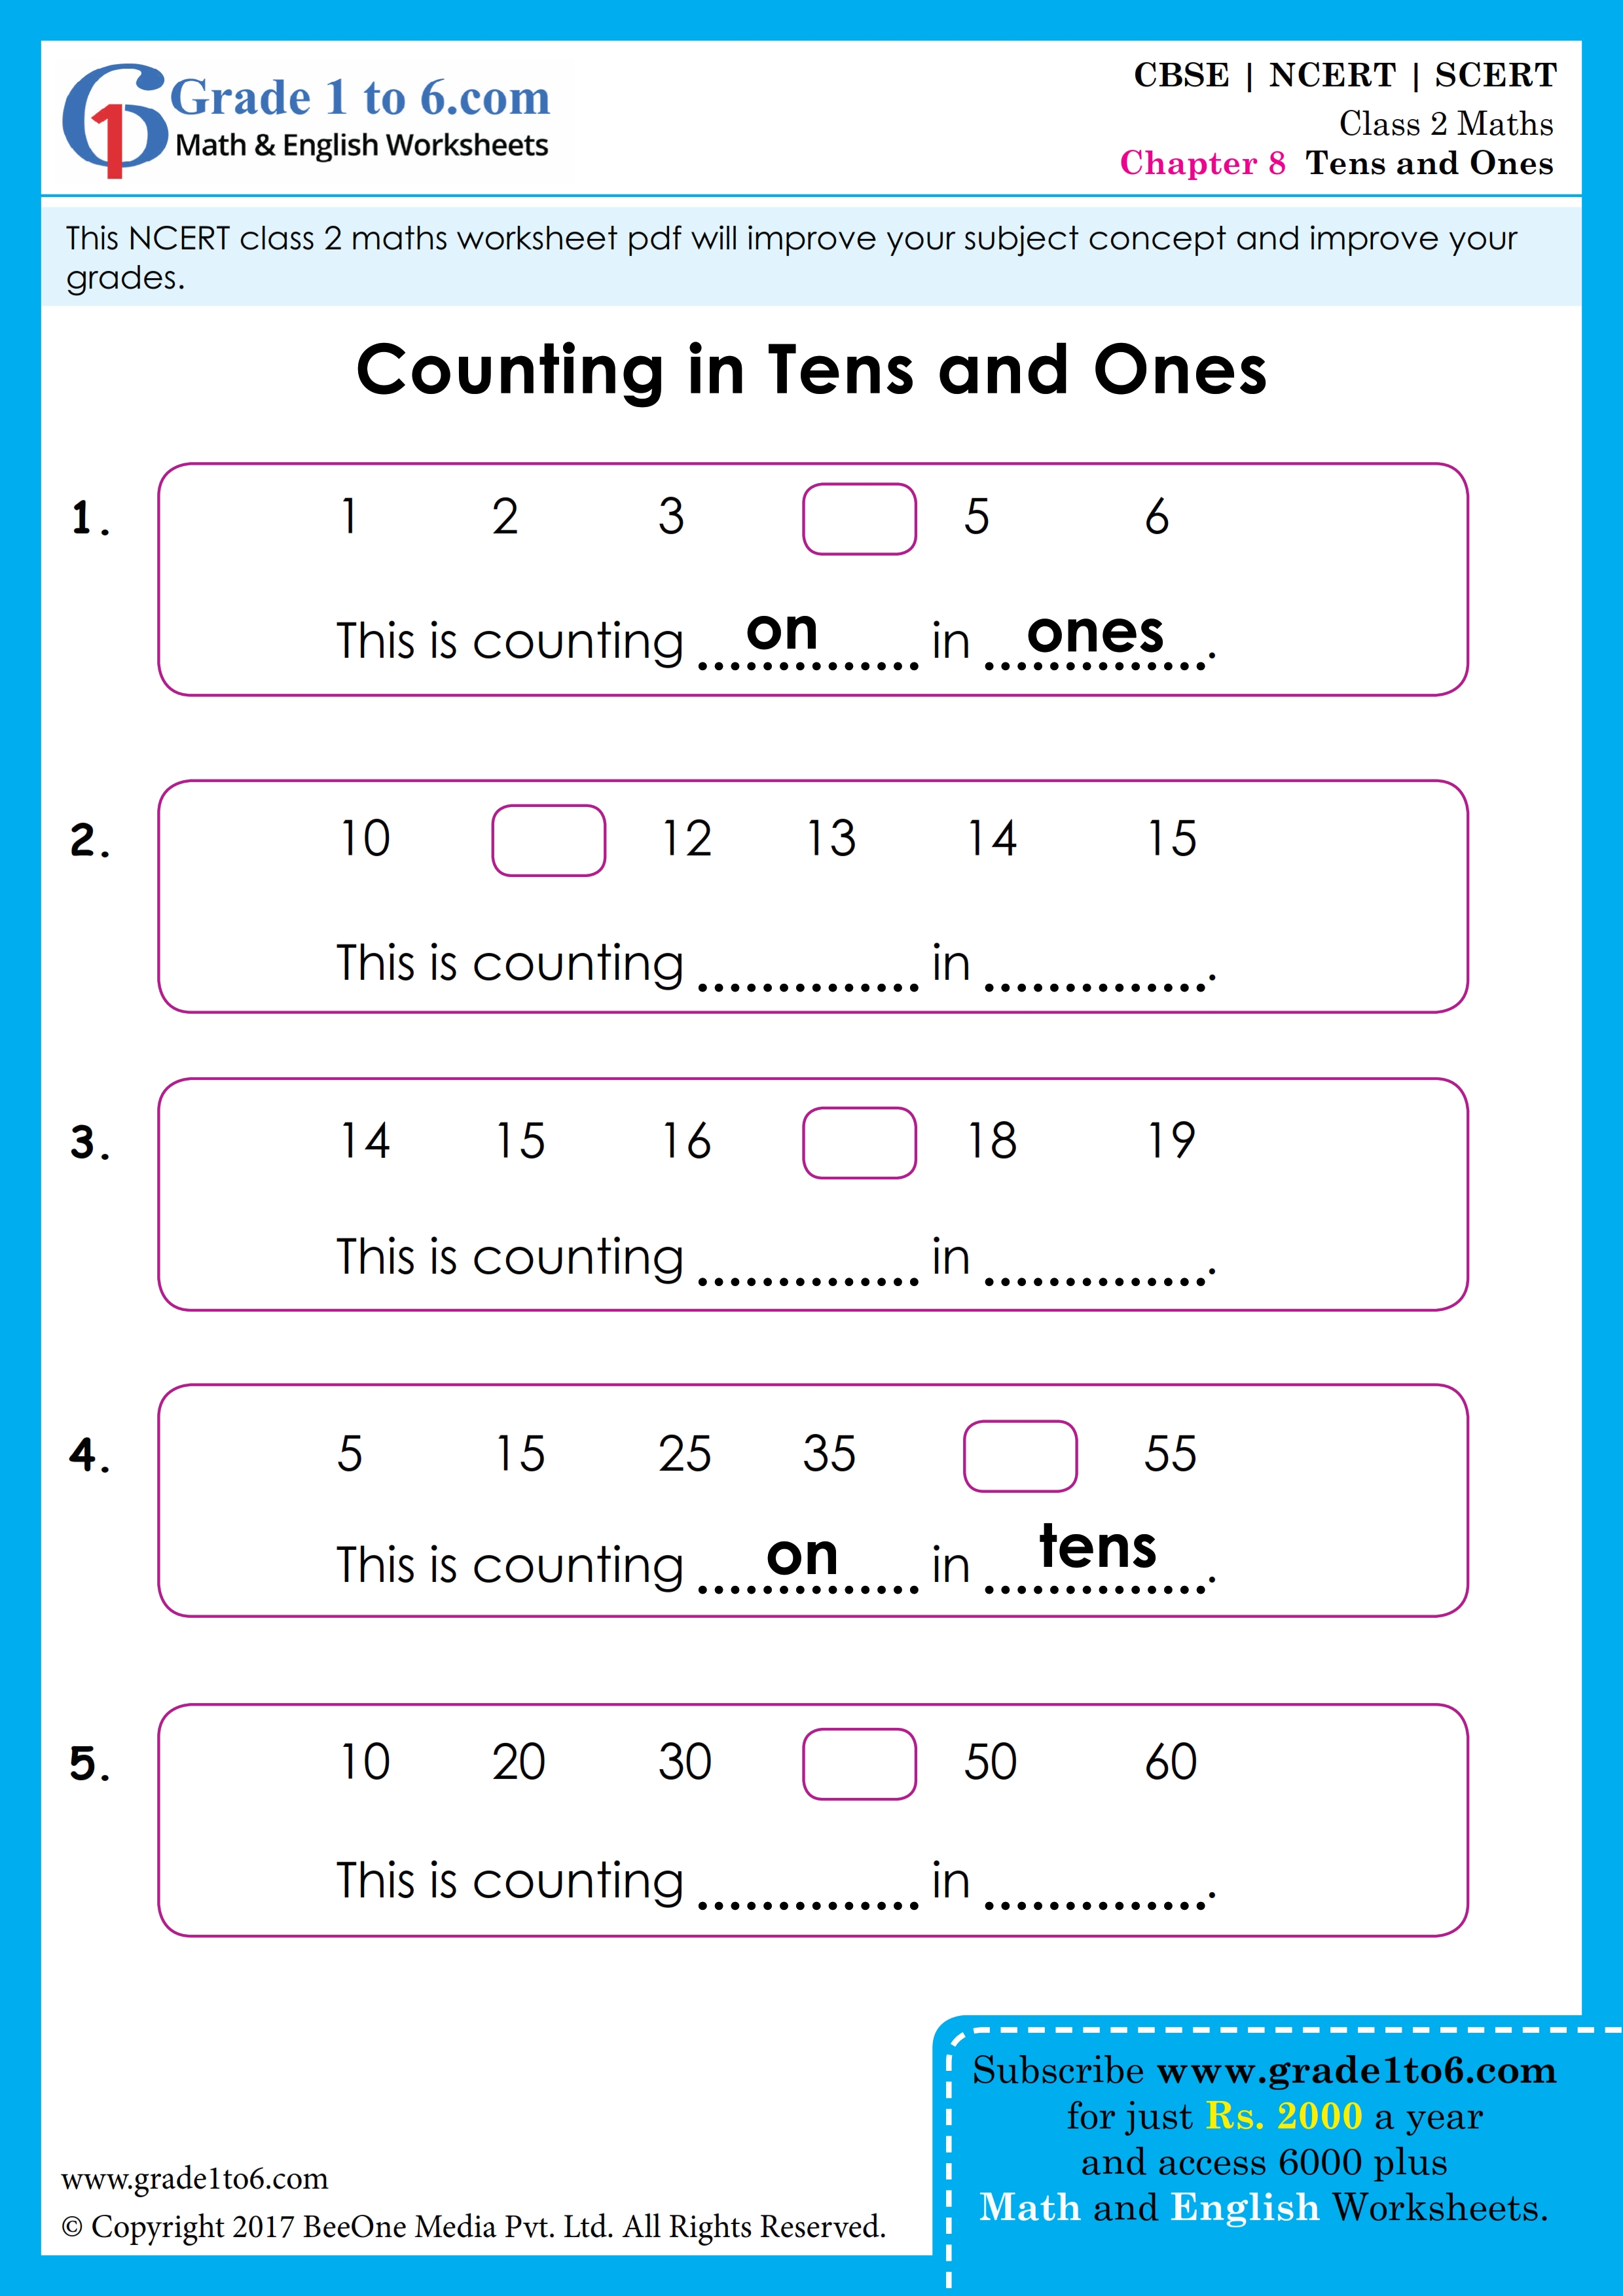 NCERT Class 2 Maths Worksheet | Grade1to6.com